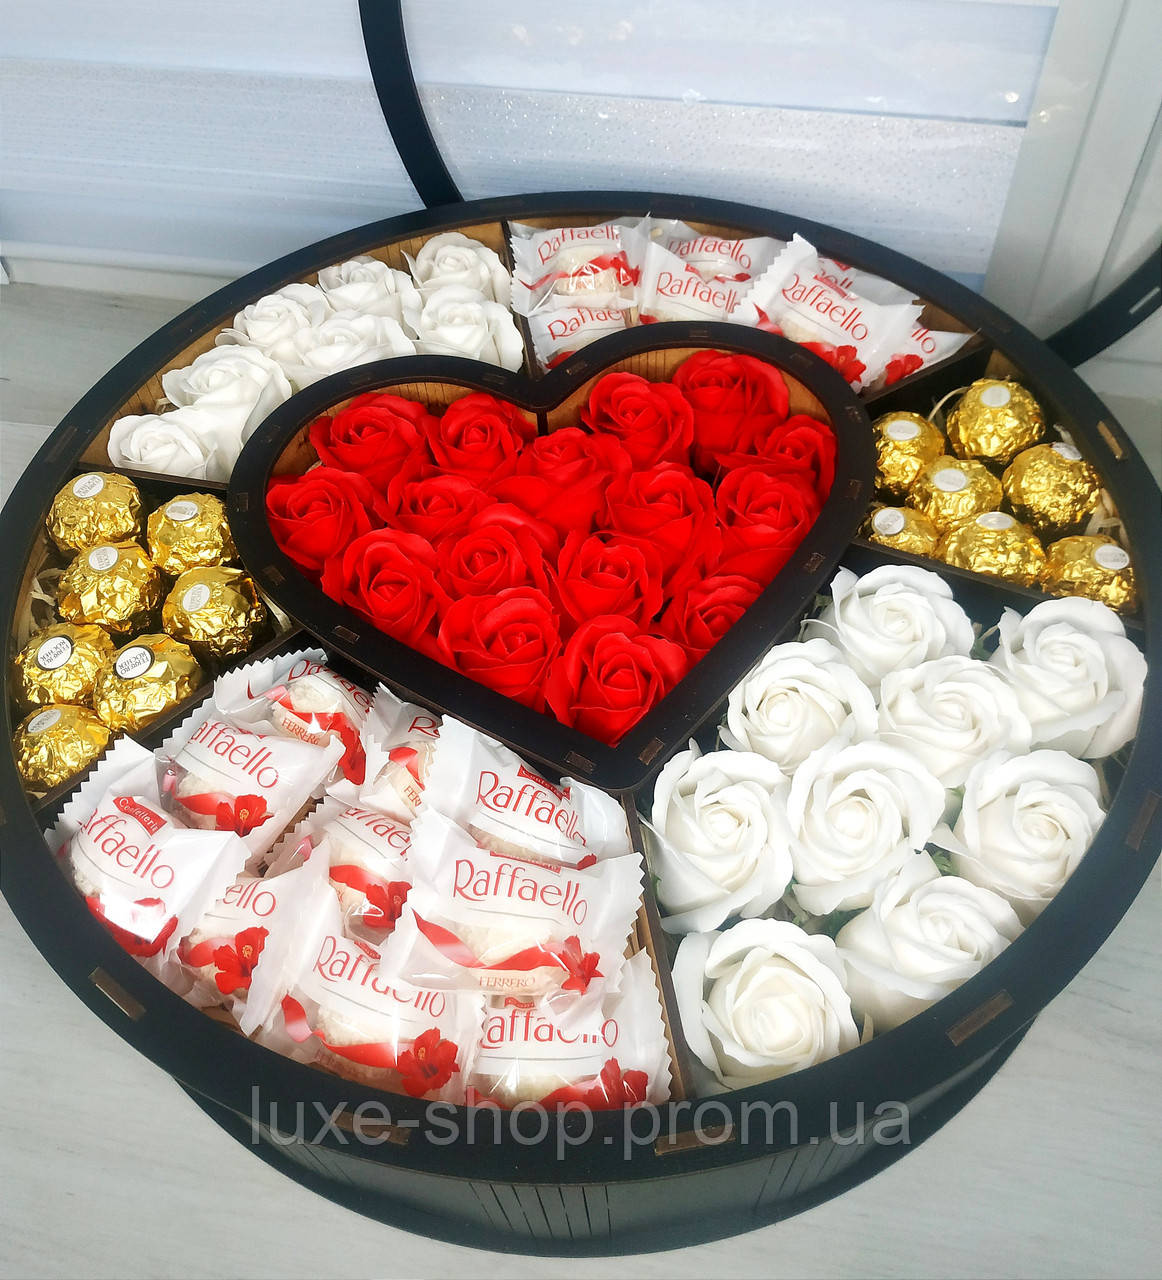 Подарунковий набір з квітами - Троянди - Подарунок для дівчини, жінки на День Народження, День Закоханих